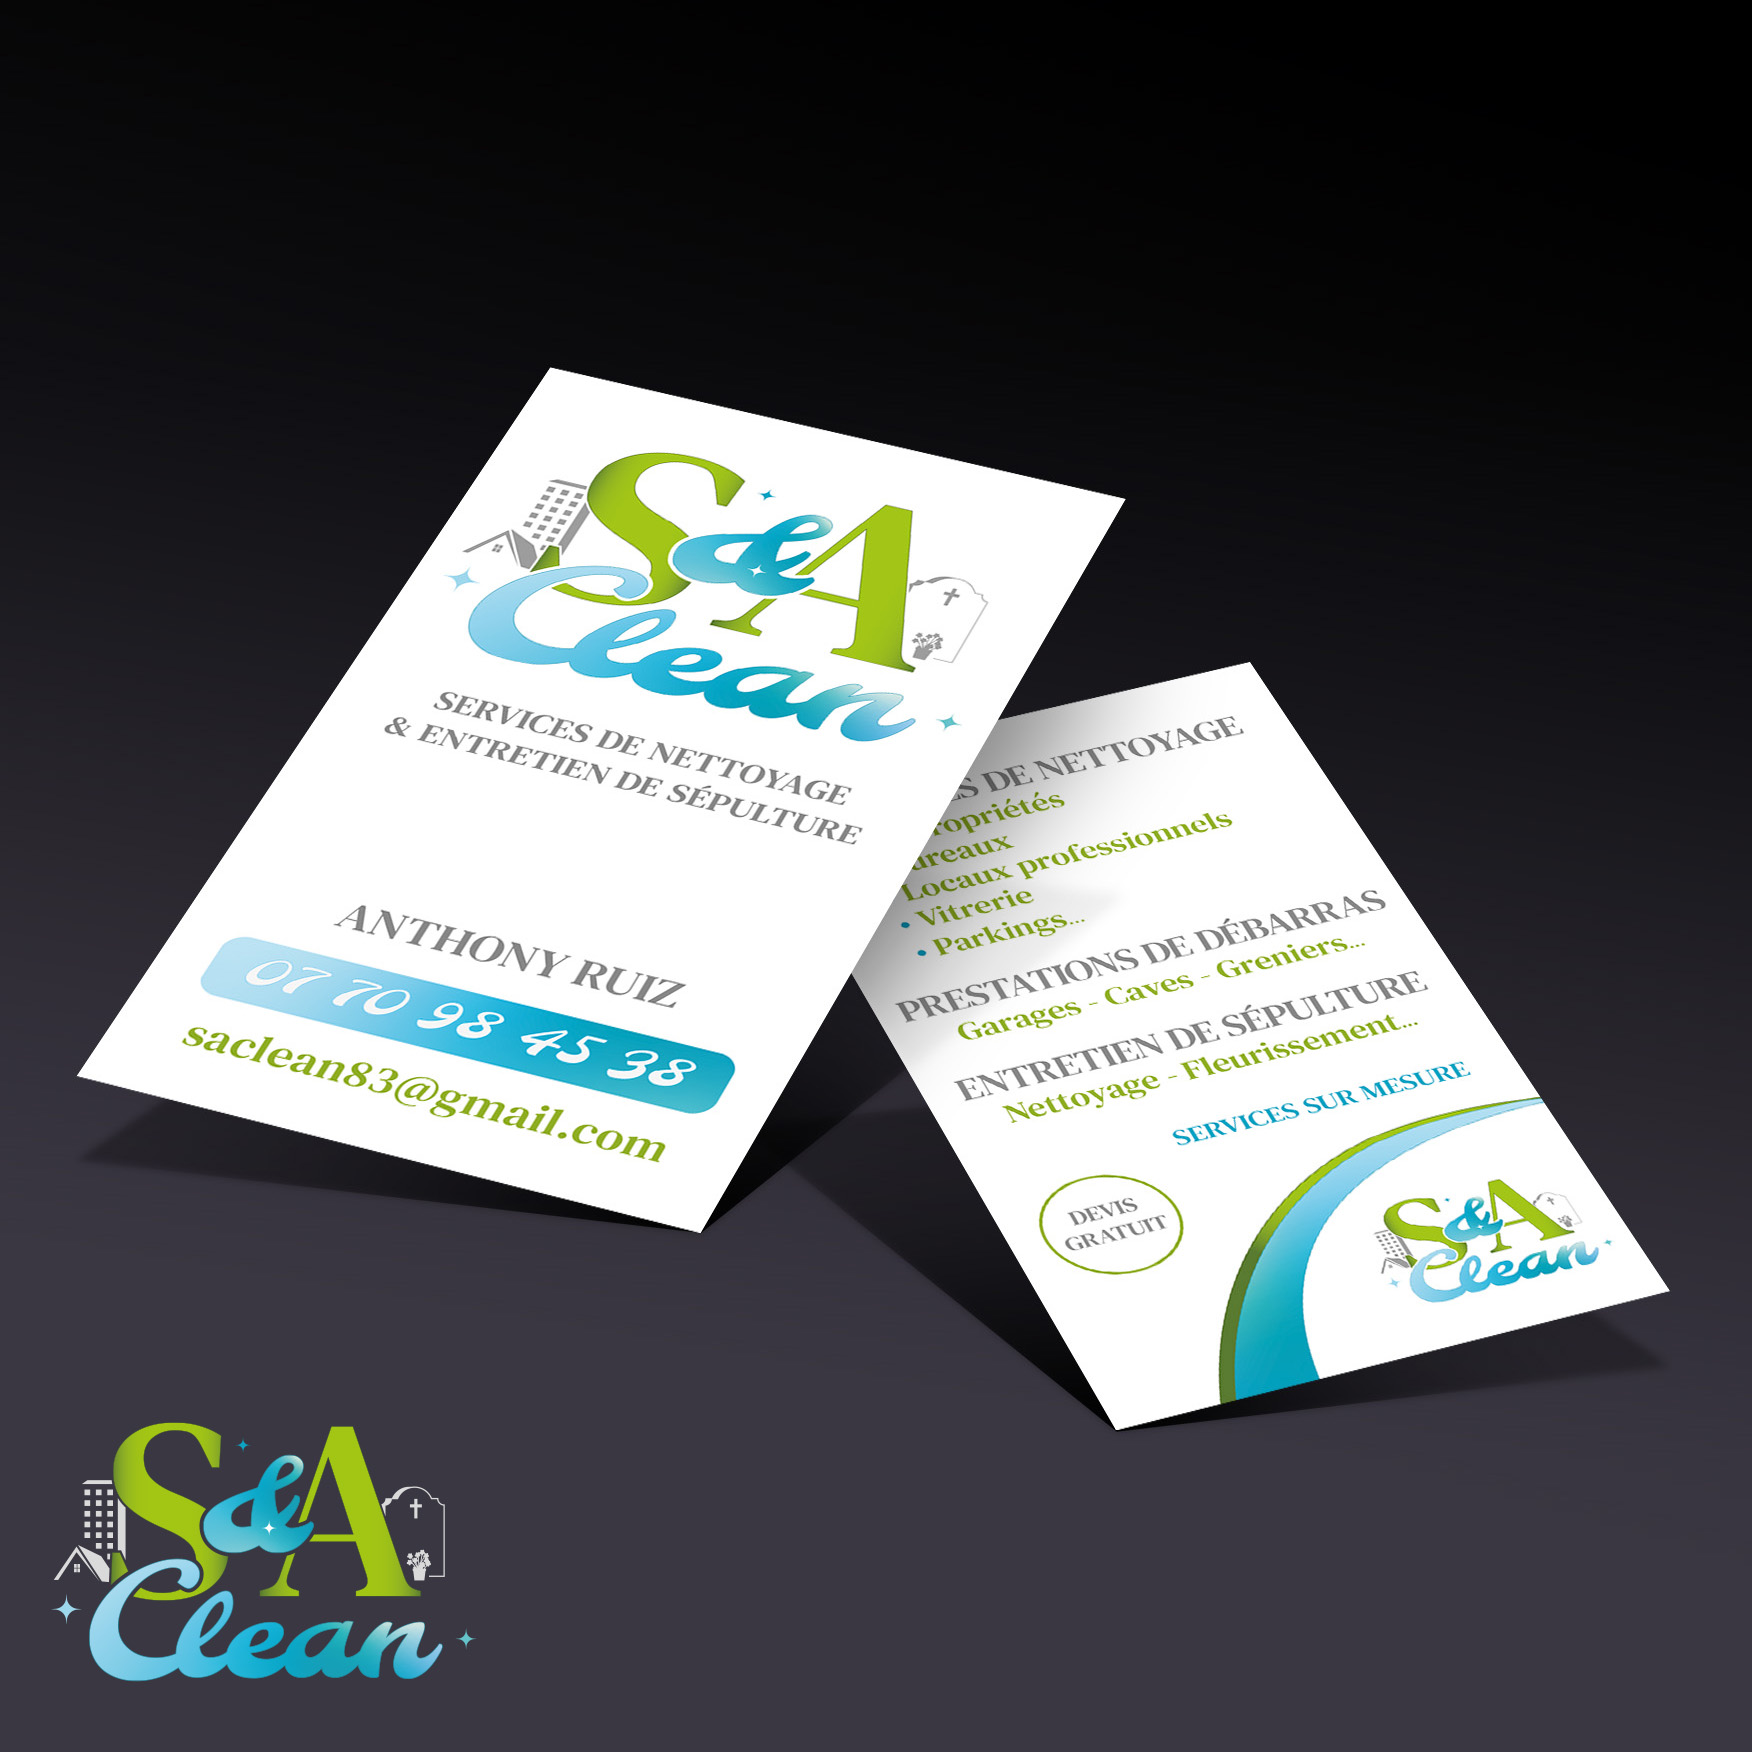 Cartes de visite pour S&A Clean agence de nettoyage